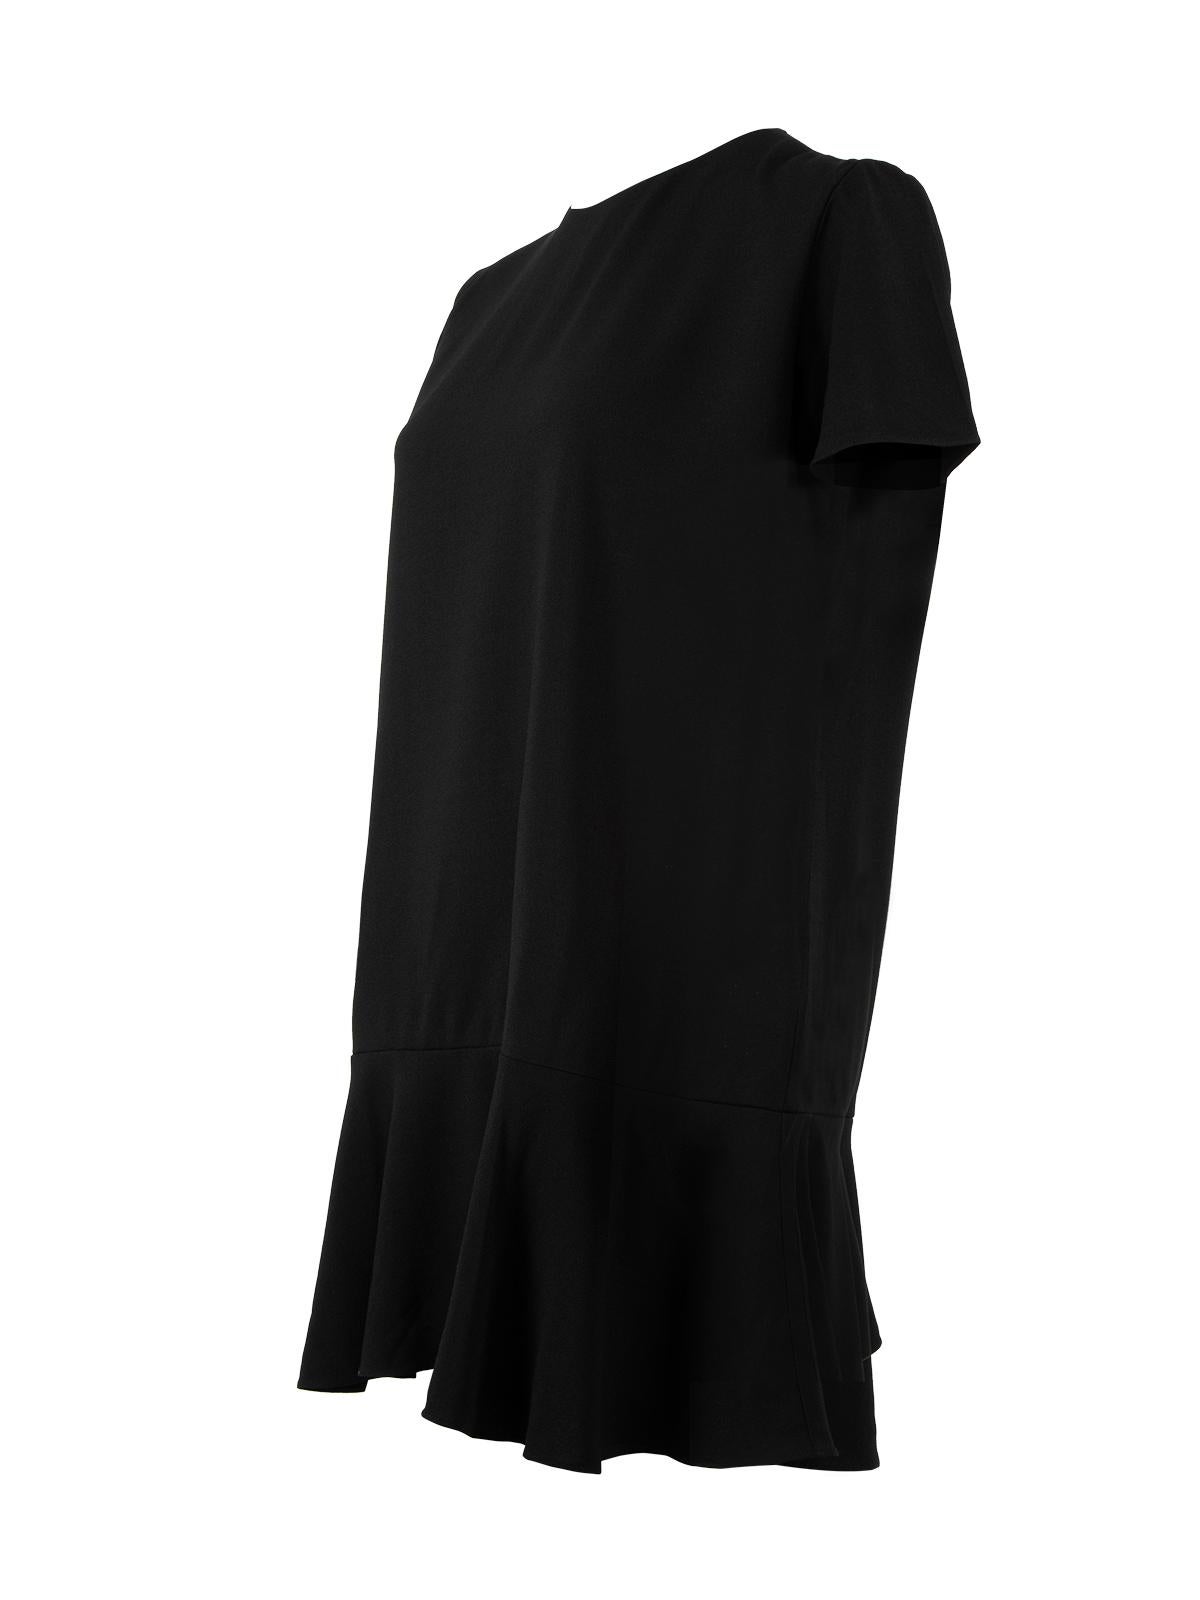 Pre-Loved Saint Laurent Women's Short Sleeved Little Black Dress 1